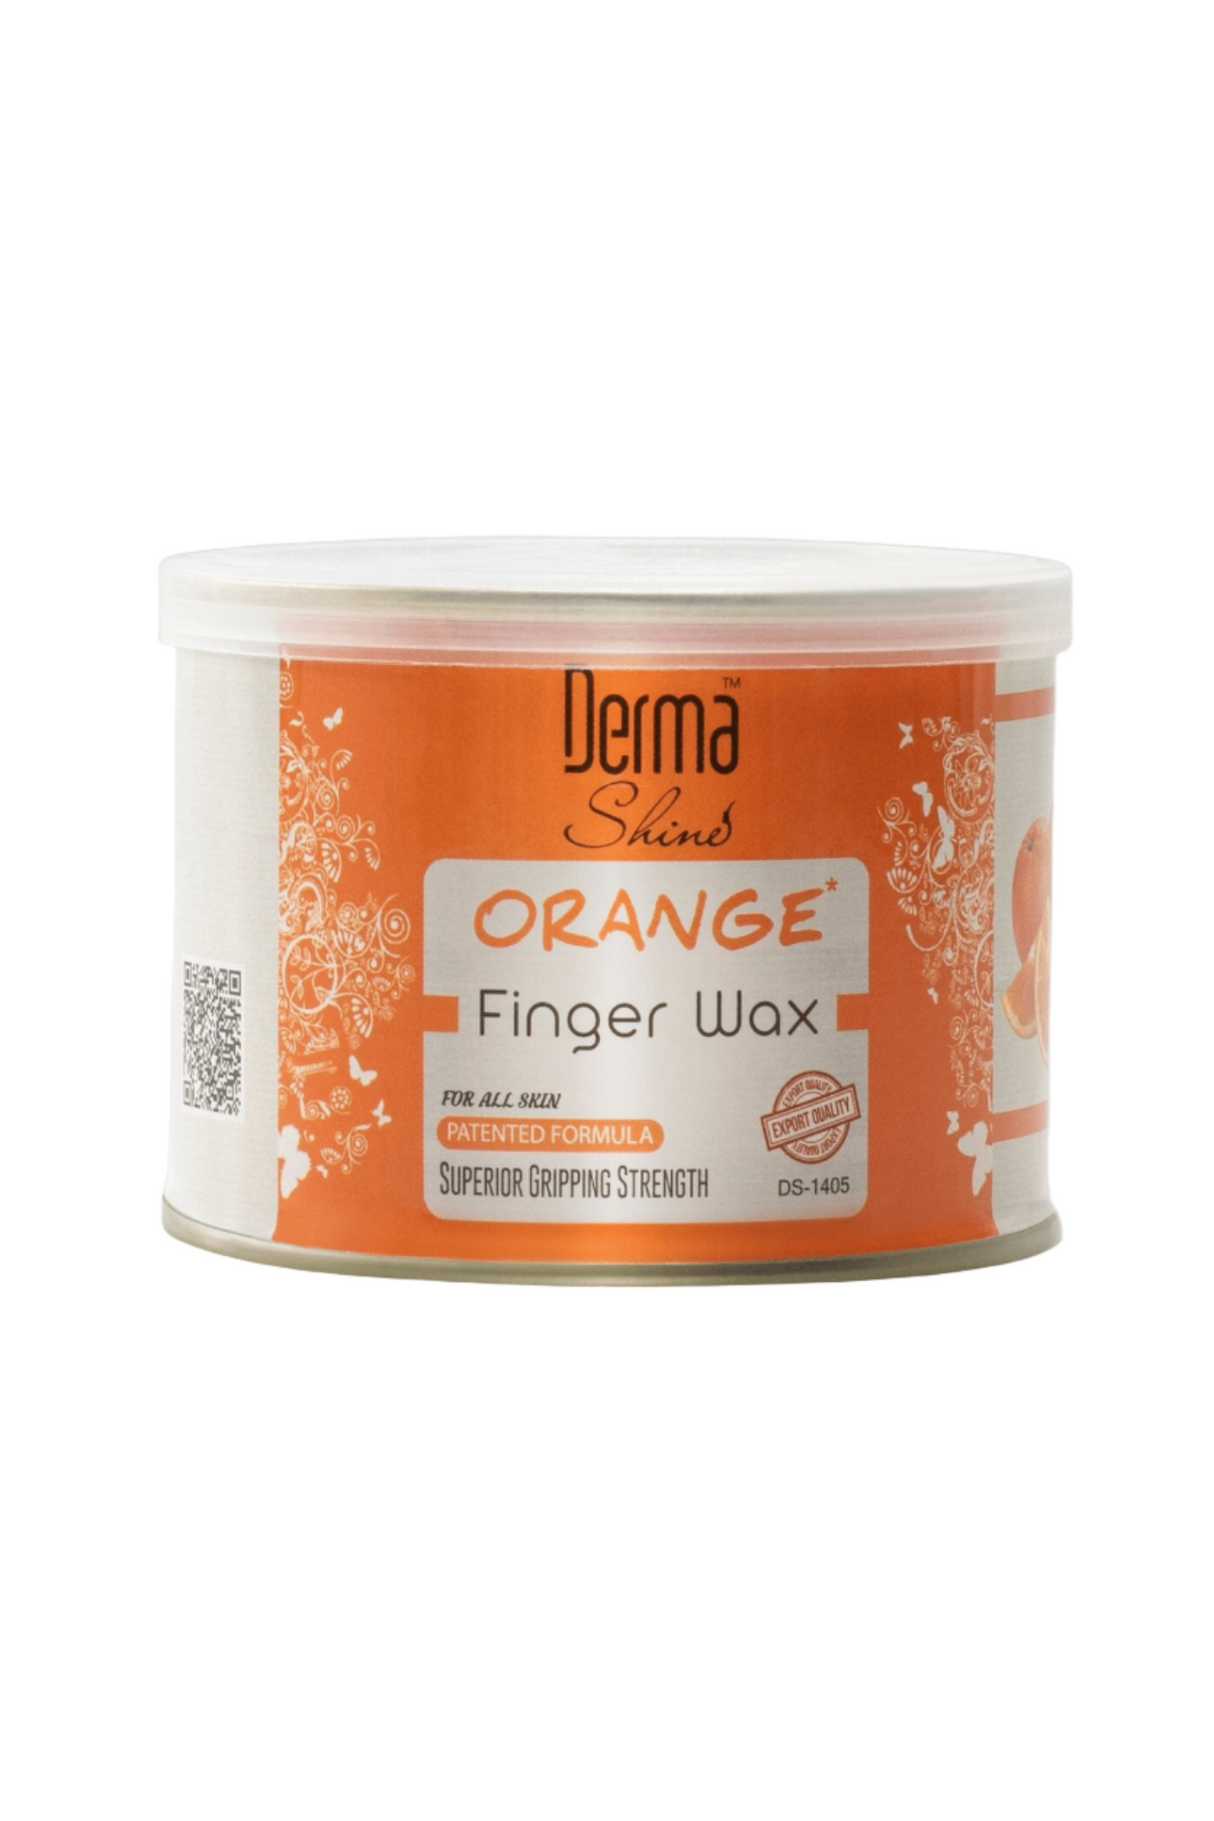 derma shine finger wax orange 250g